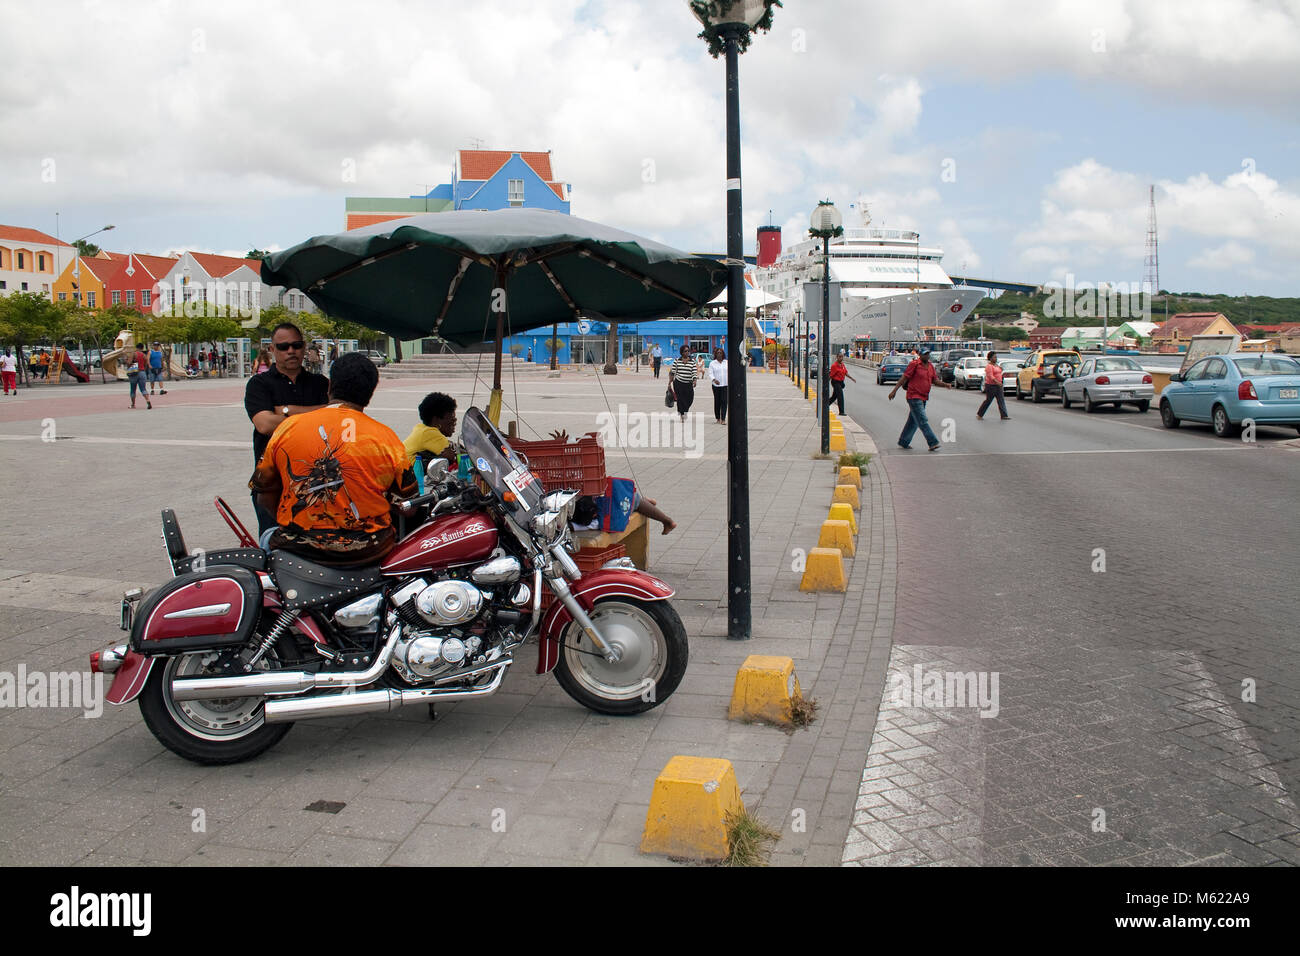 Mann auf Motorrad an einem Hausierer, Stadtteil Otrobanda, Willemstad, Curacao, Niederländische Antillen, Karibik Stockfoto